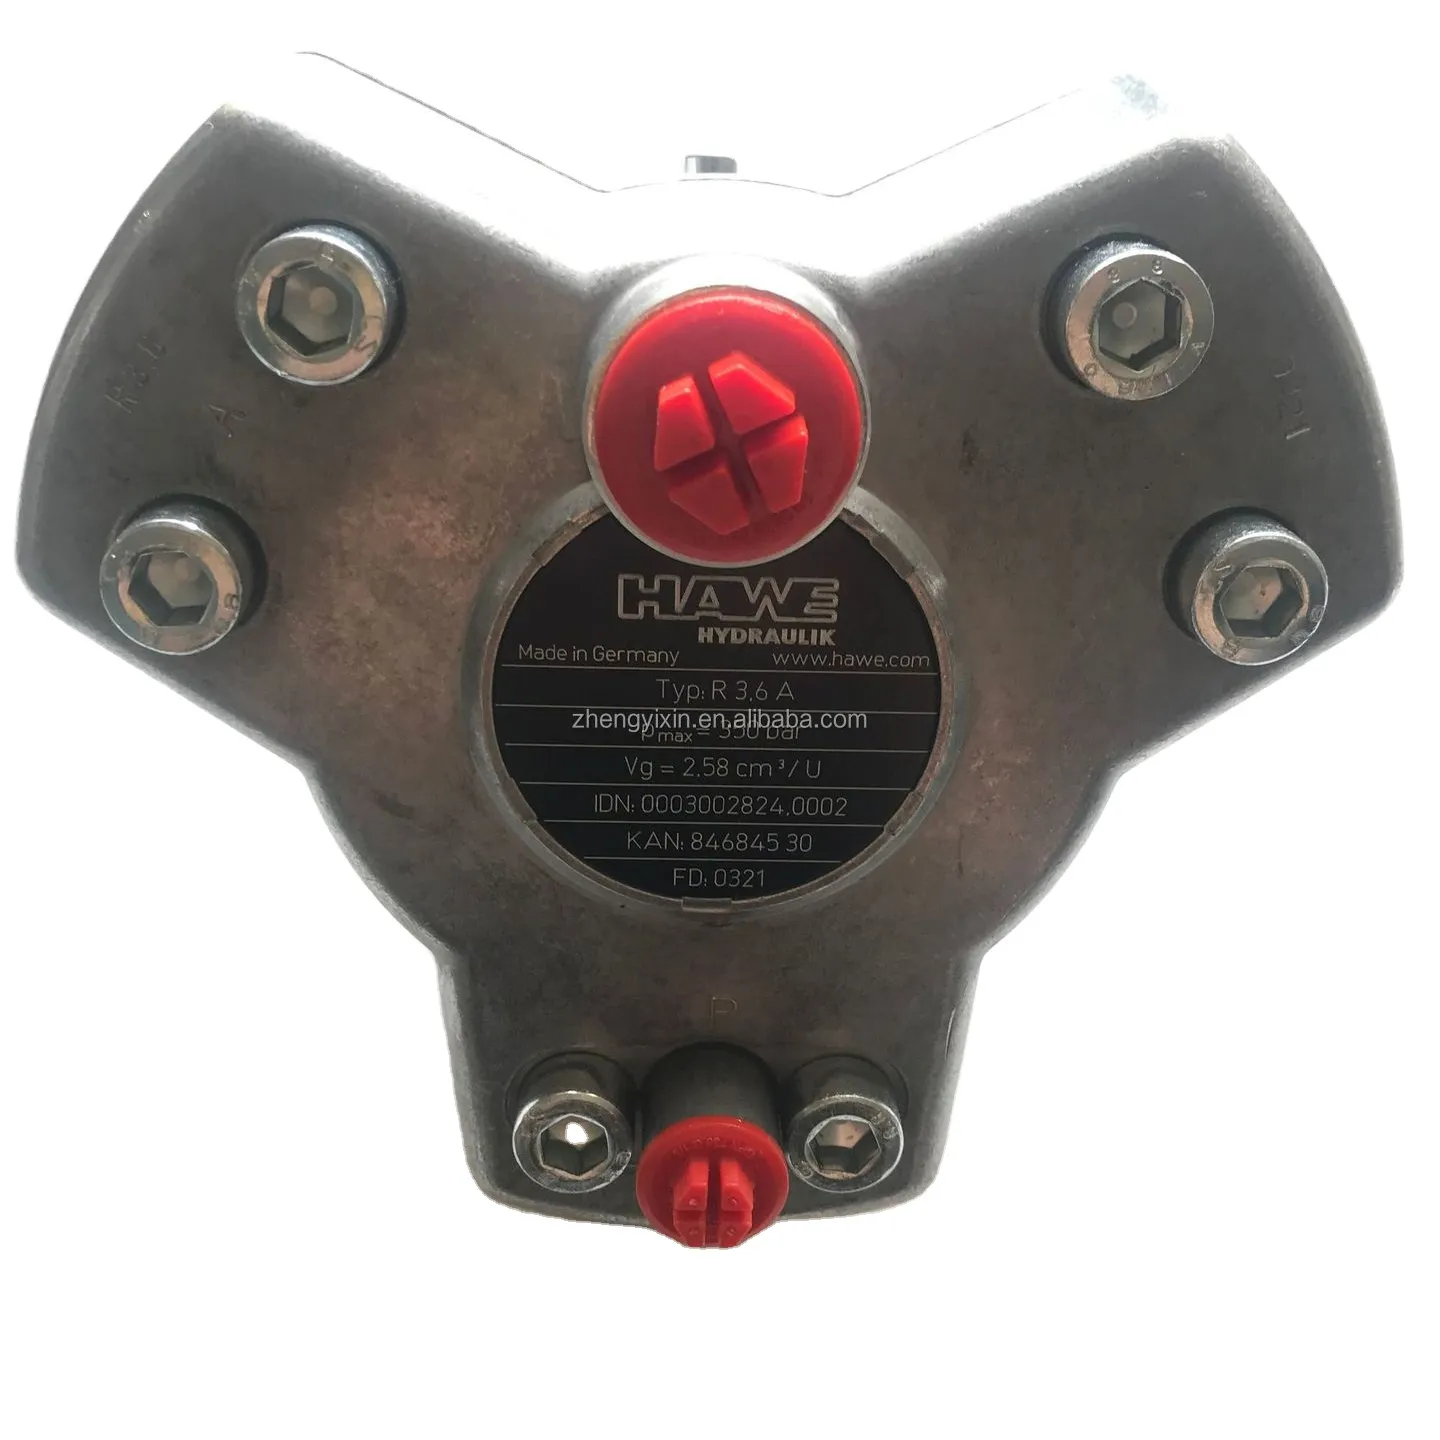 Pompa a pistone originale R3.6A R2.7 Hawe R11.0 pompa idraulica Hawe R9.0 pompa radiale idraulica